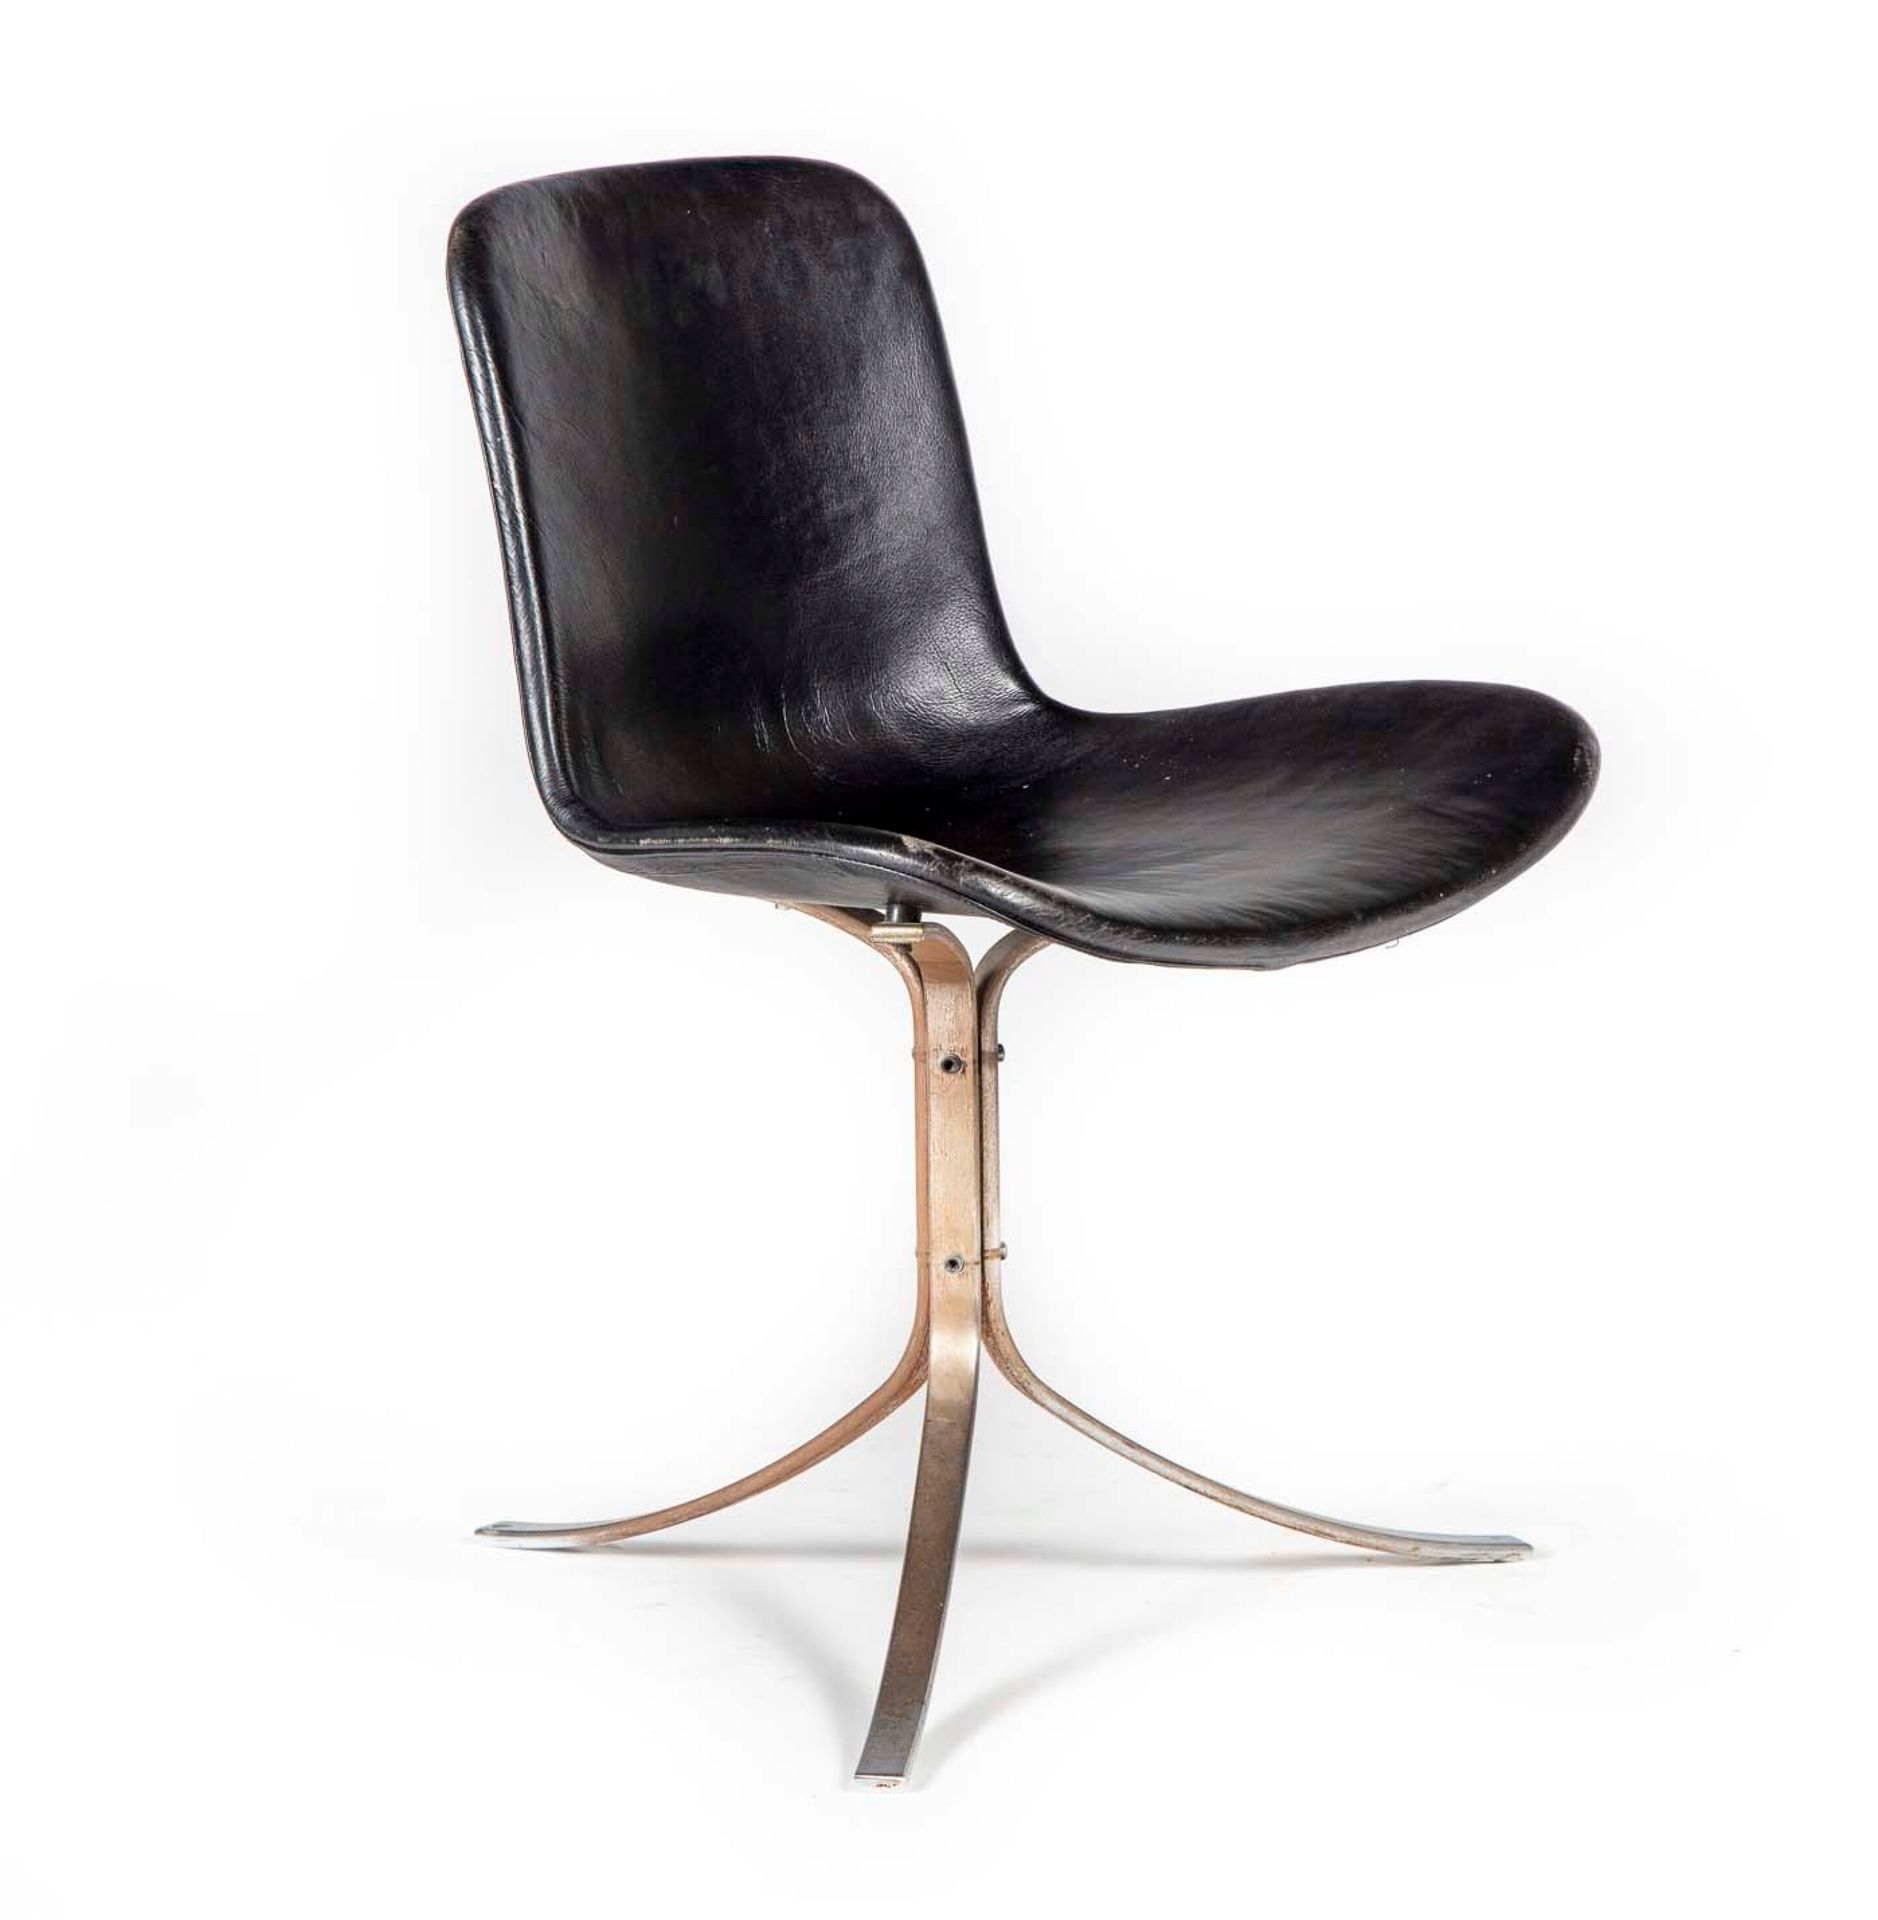 Null 椅子上有黑色皮革装饰的座椅，放在一个钢制的十字底座上

约1970年